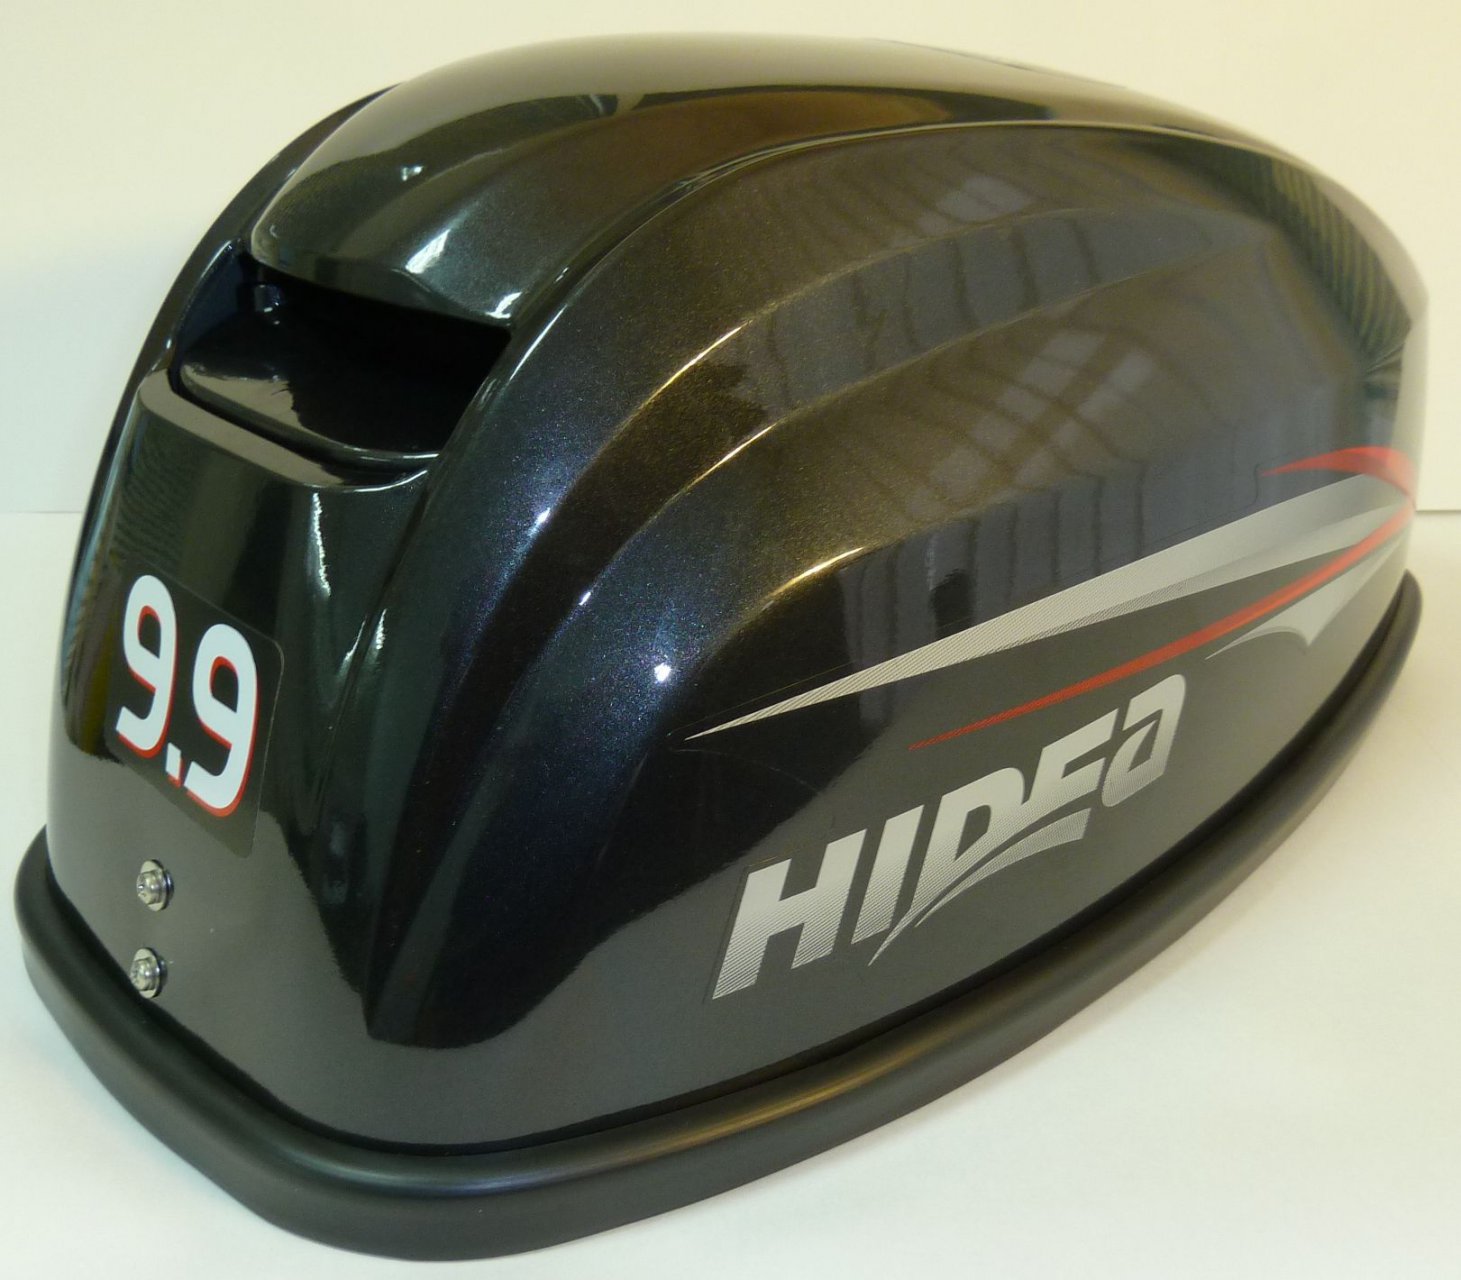 Hidea pro лодочные моторы купить. Колпак Hidea 9.9. Хидея 9.9. Hidea 9.9 Pro. Мотор Hidea 9.9.